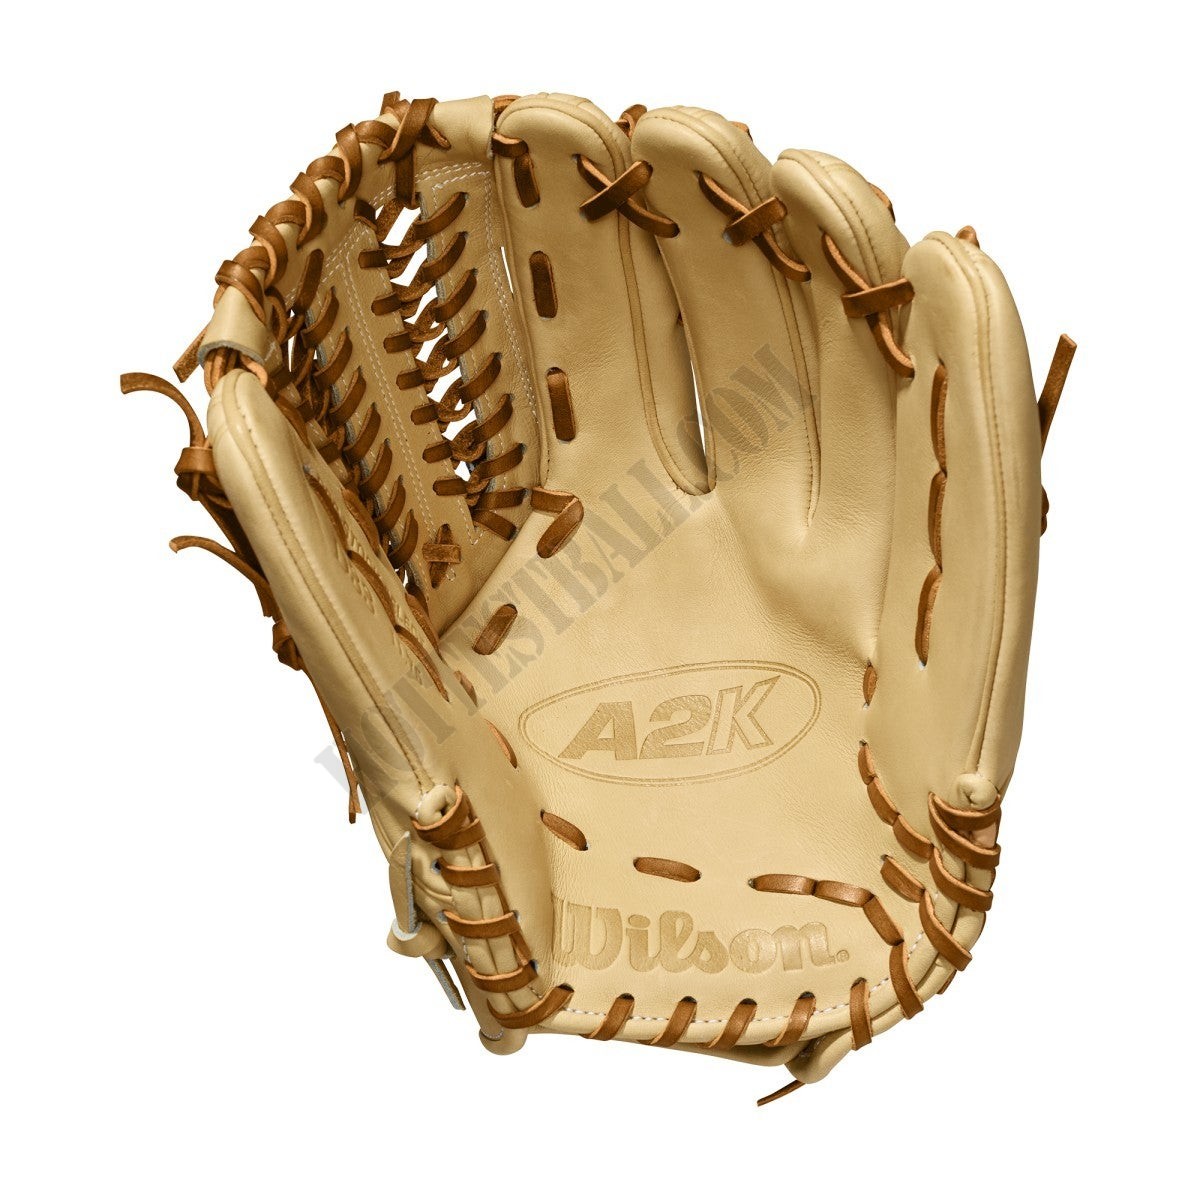 2020 A2K D33 11.75" Pitcher's Baseball Glove ● Wilson Promotions - -2